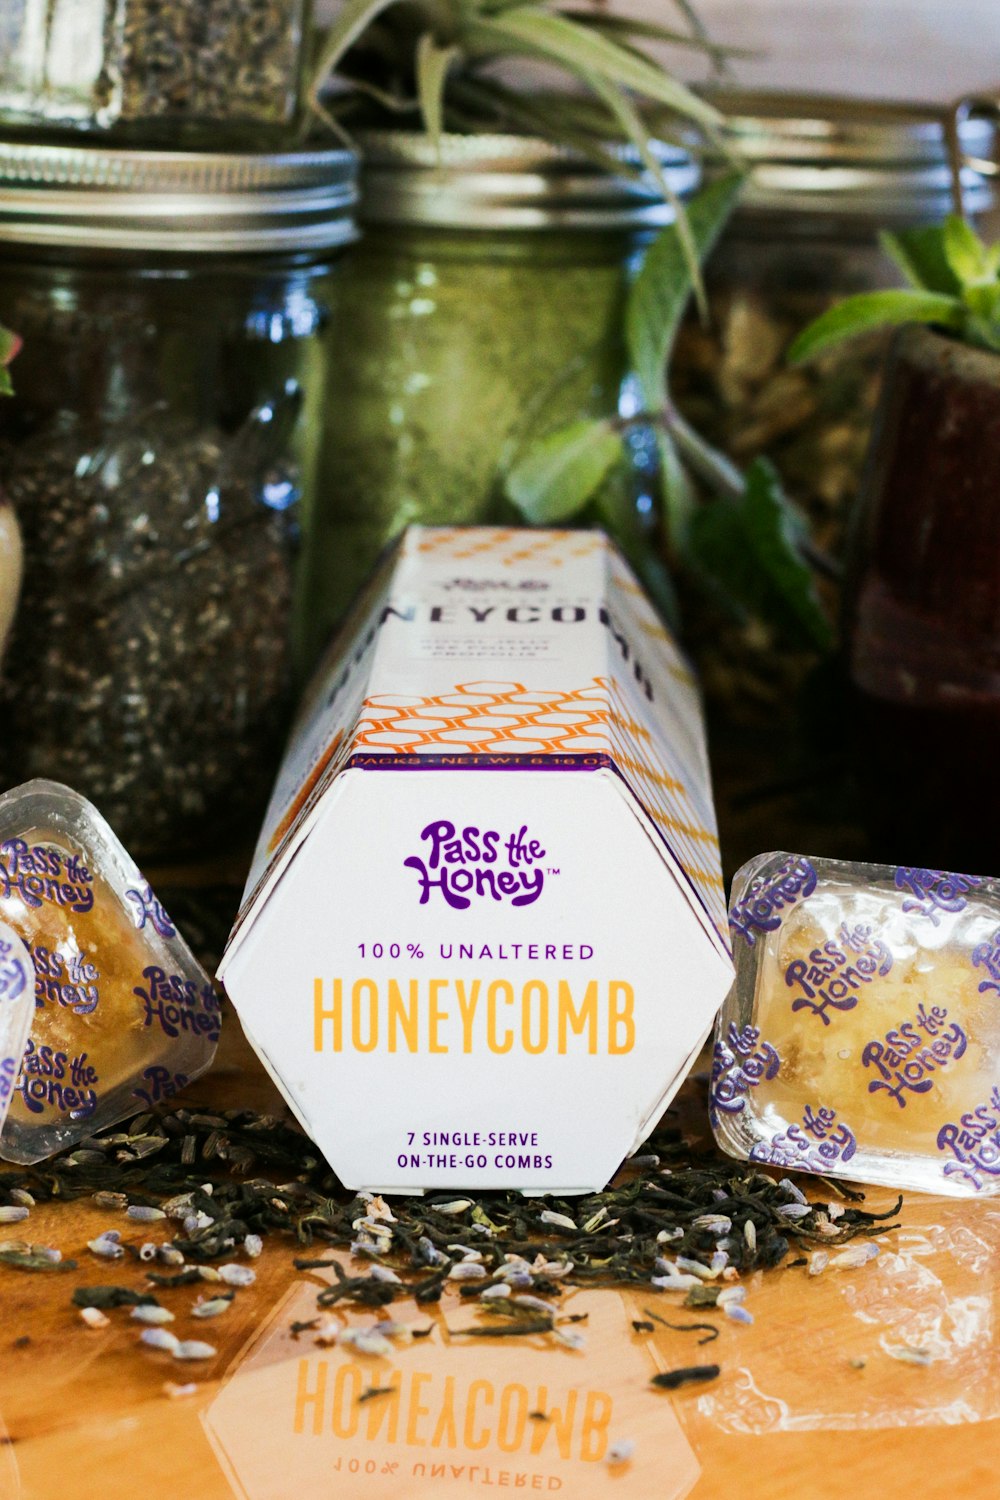 Pass the Honey honeycomb box across glass jars